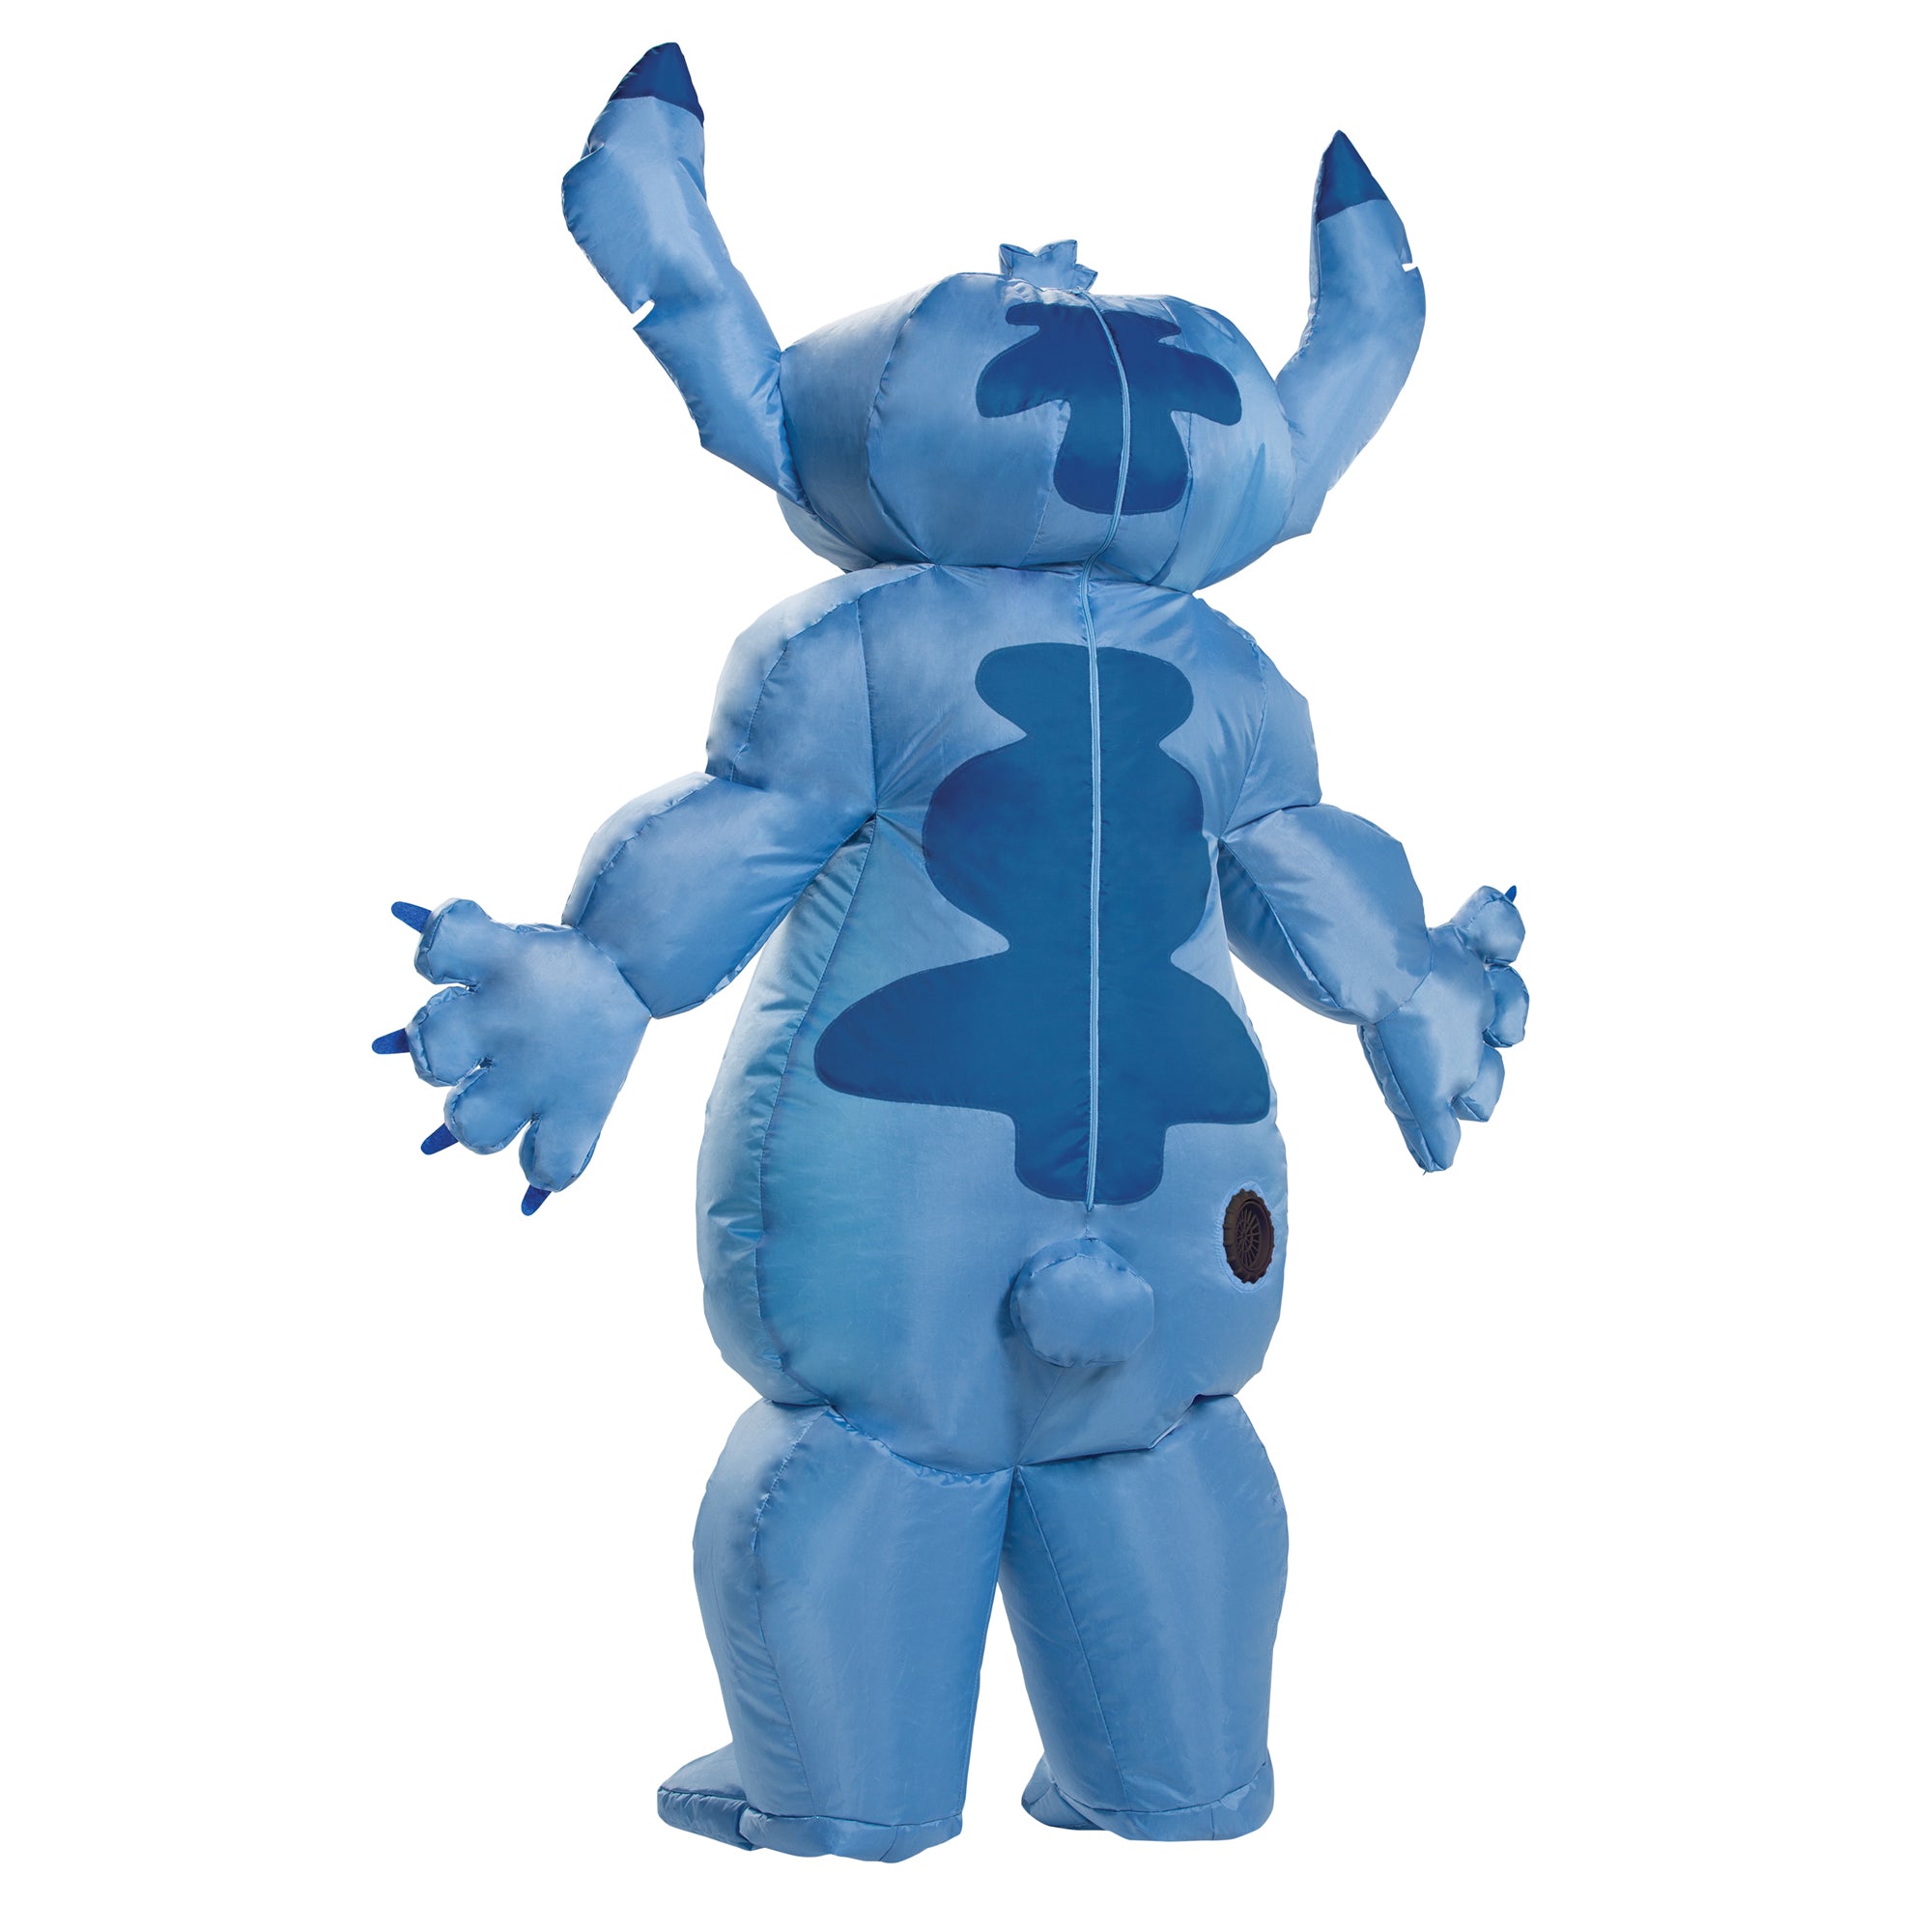 Costume de Stitch pour enfants, Disney Lilo et Stitch